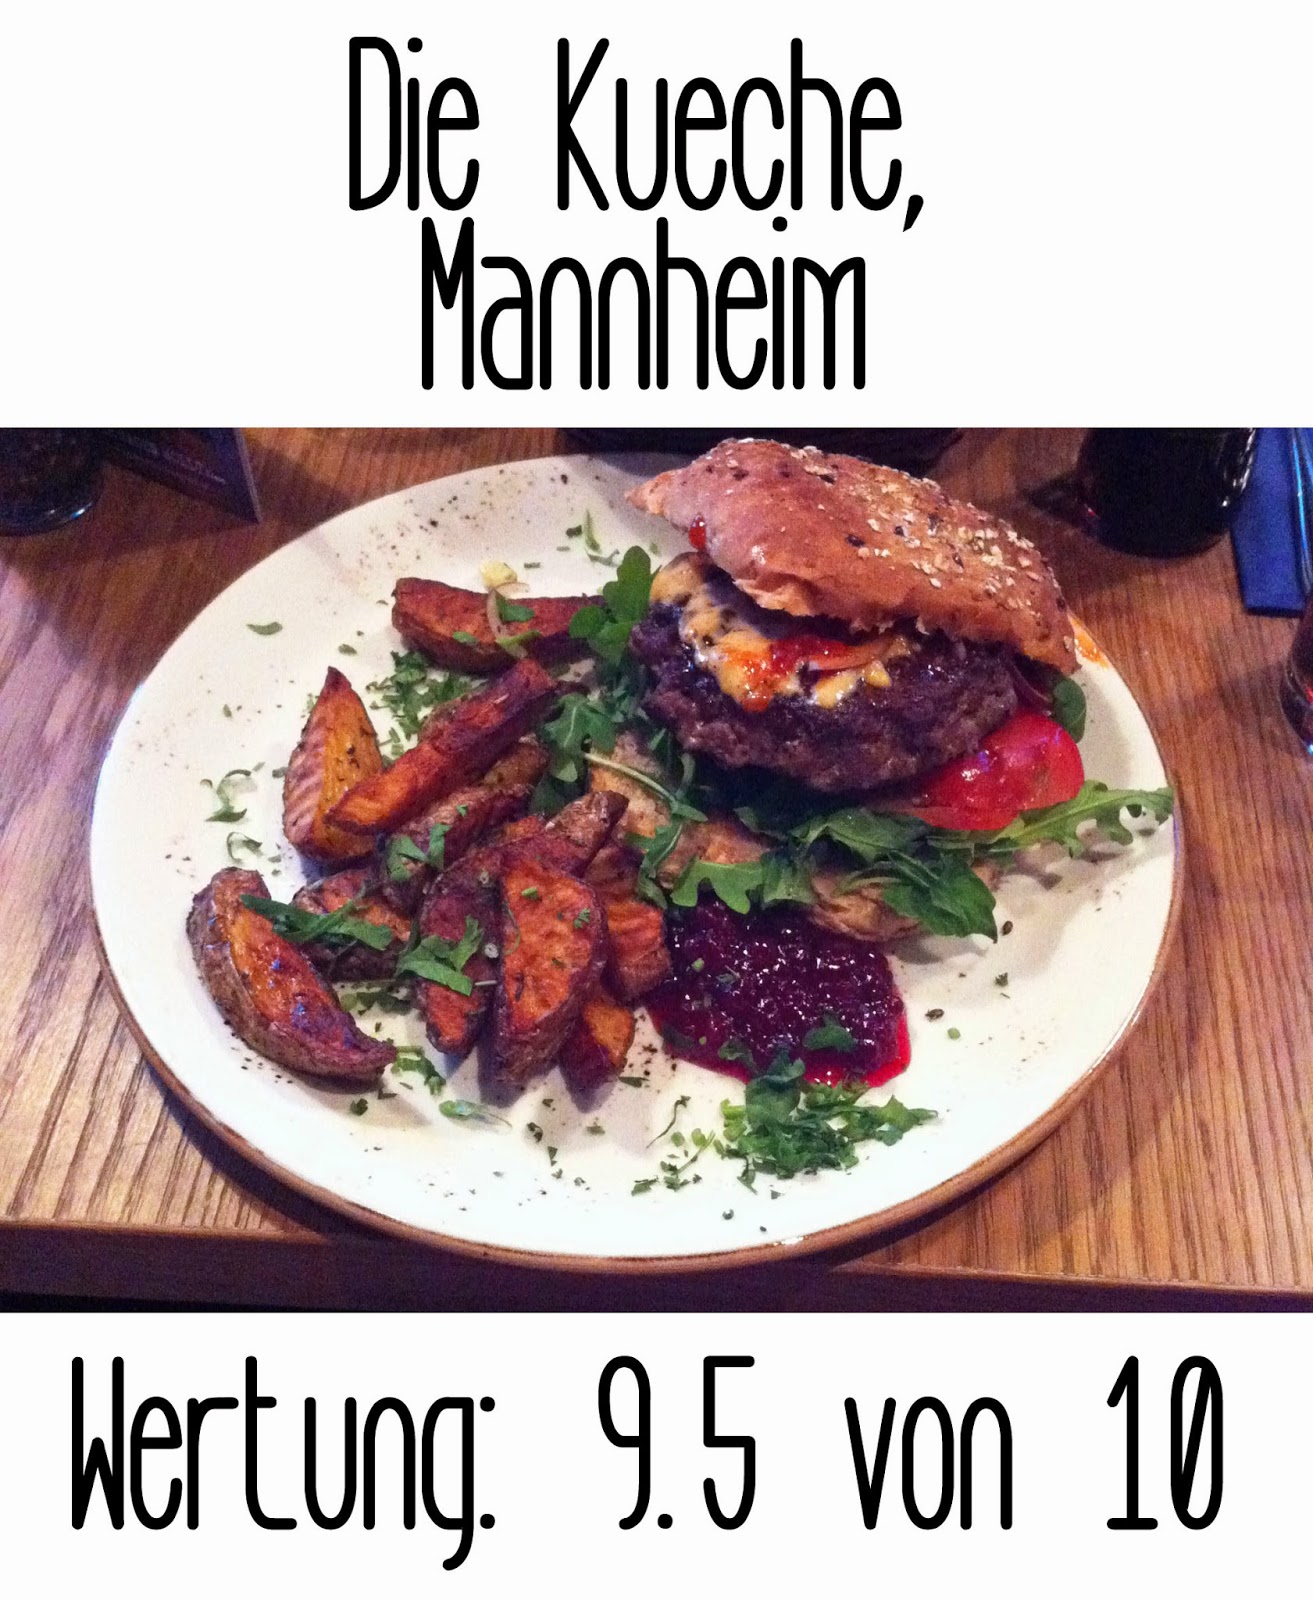 http://germanysbestburger.blogspot.de/2014/09/die-kuche-mannheim.html